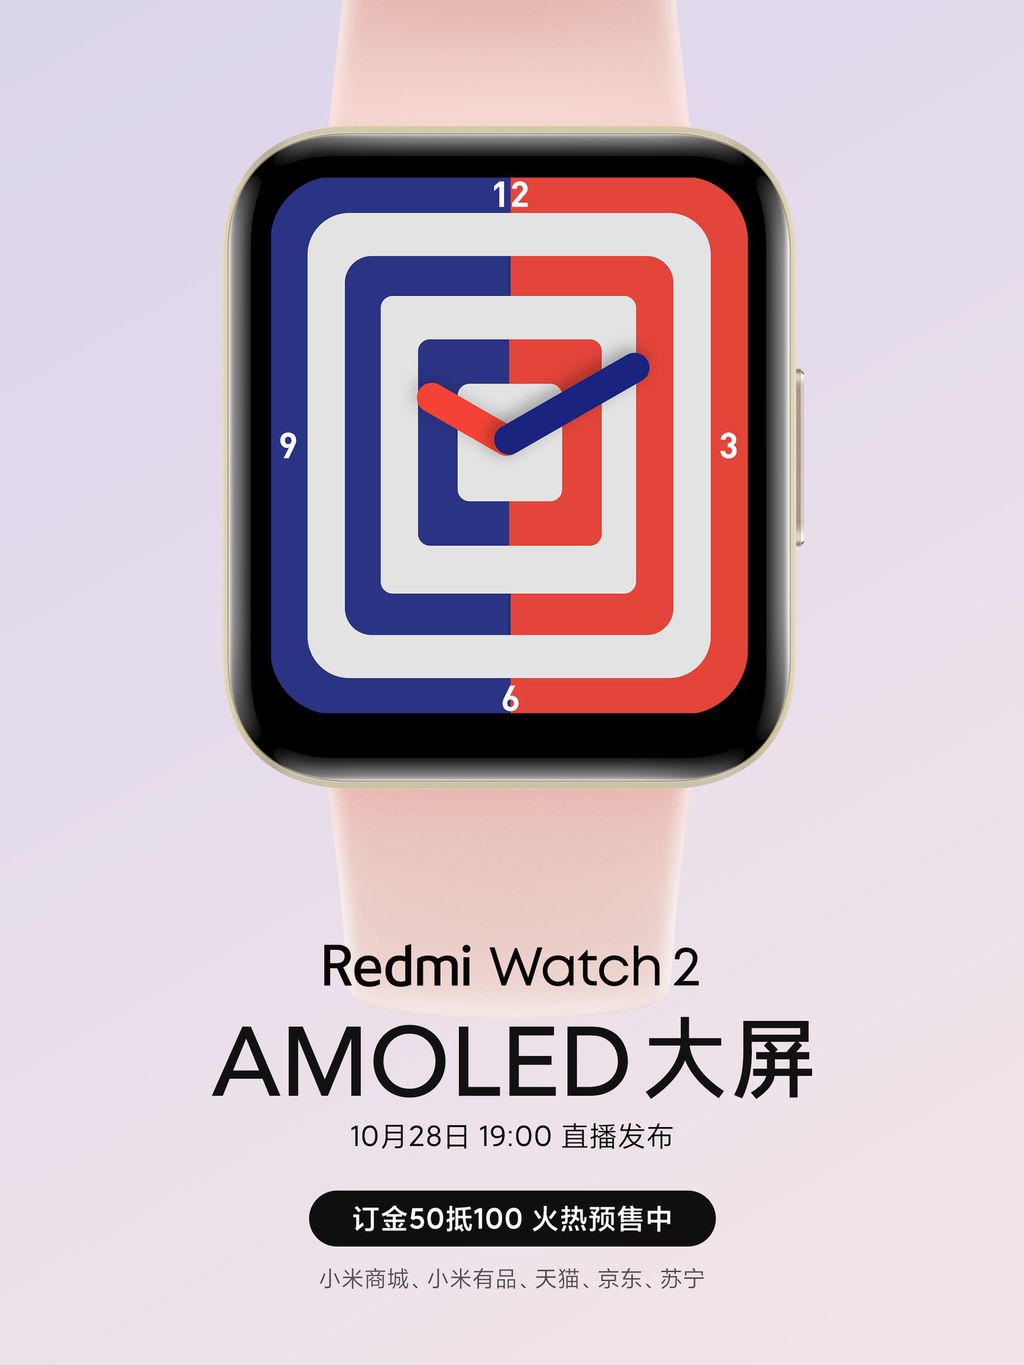 Novo relógio terá tela AMOLED e melhor aproveitamento do painel frontal (Imagem: Divulgação/Xiaomi)